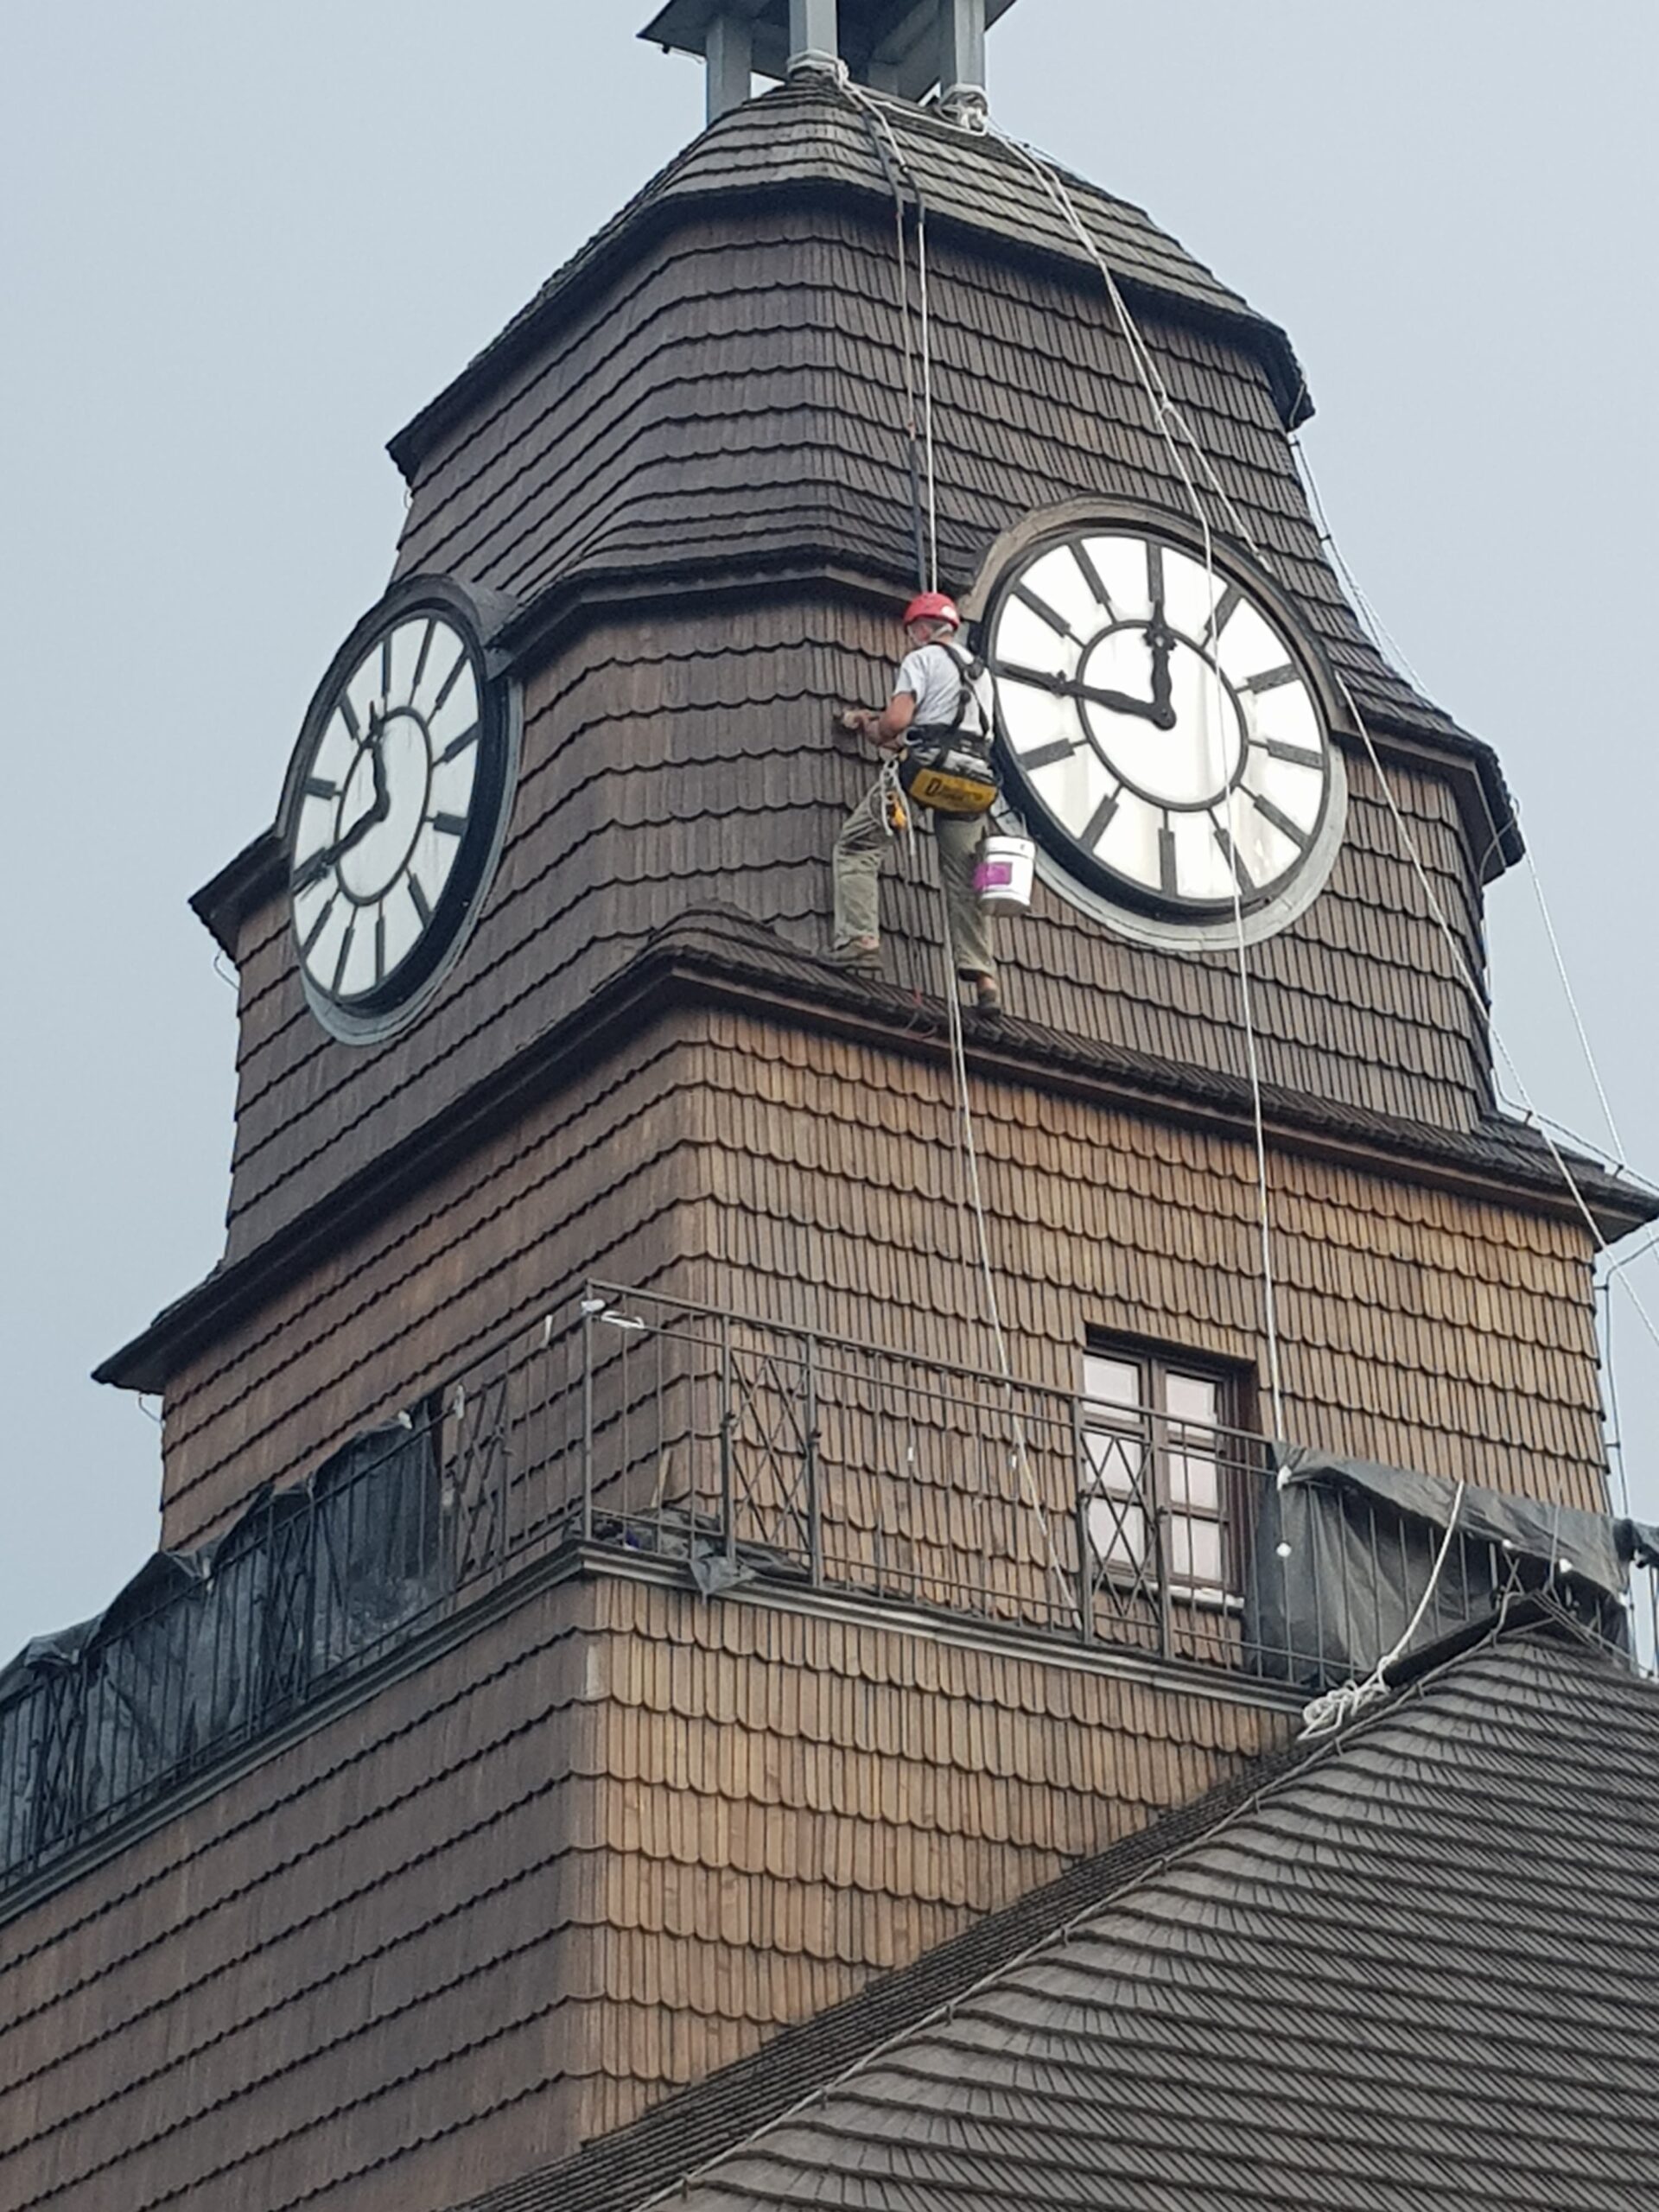 Alpinista przemysłowy, wisząc na linie, maluje wieżę zabytkowej Huty Uthemanna w Katowicach. Z każdej strony wieży znajduje się wielki zegar.